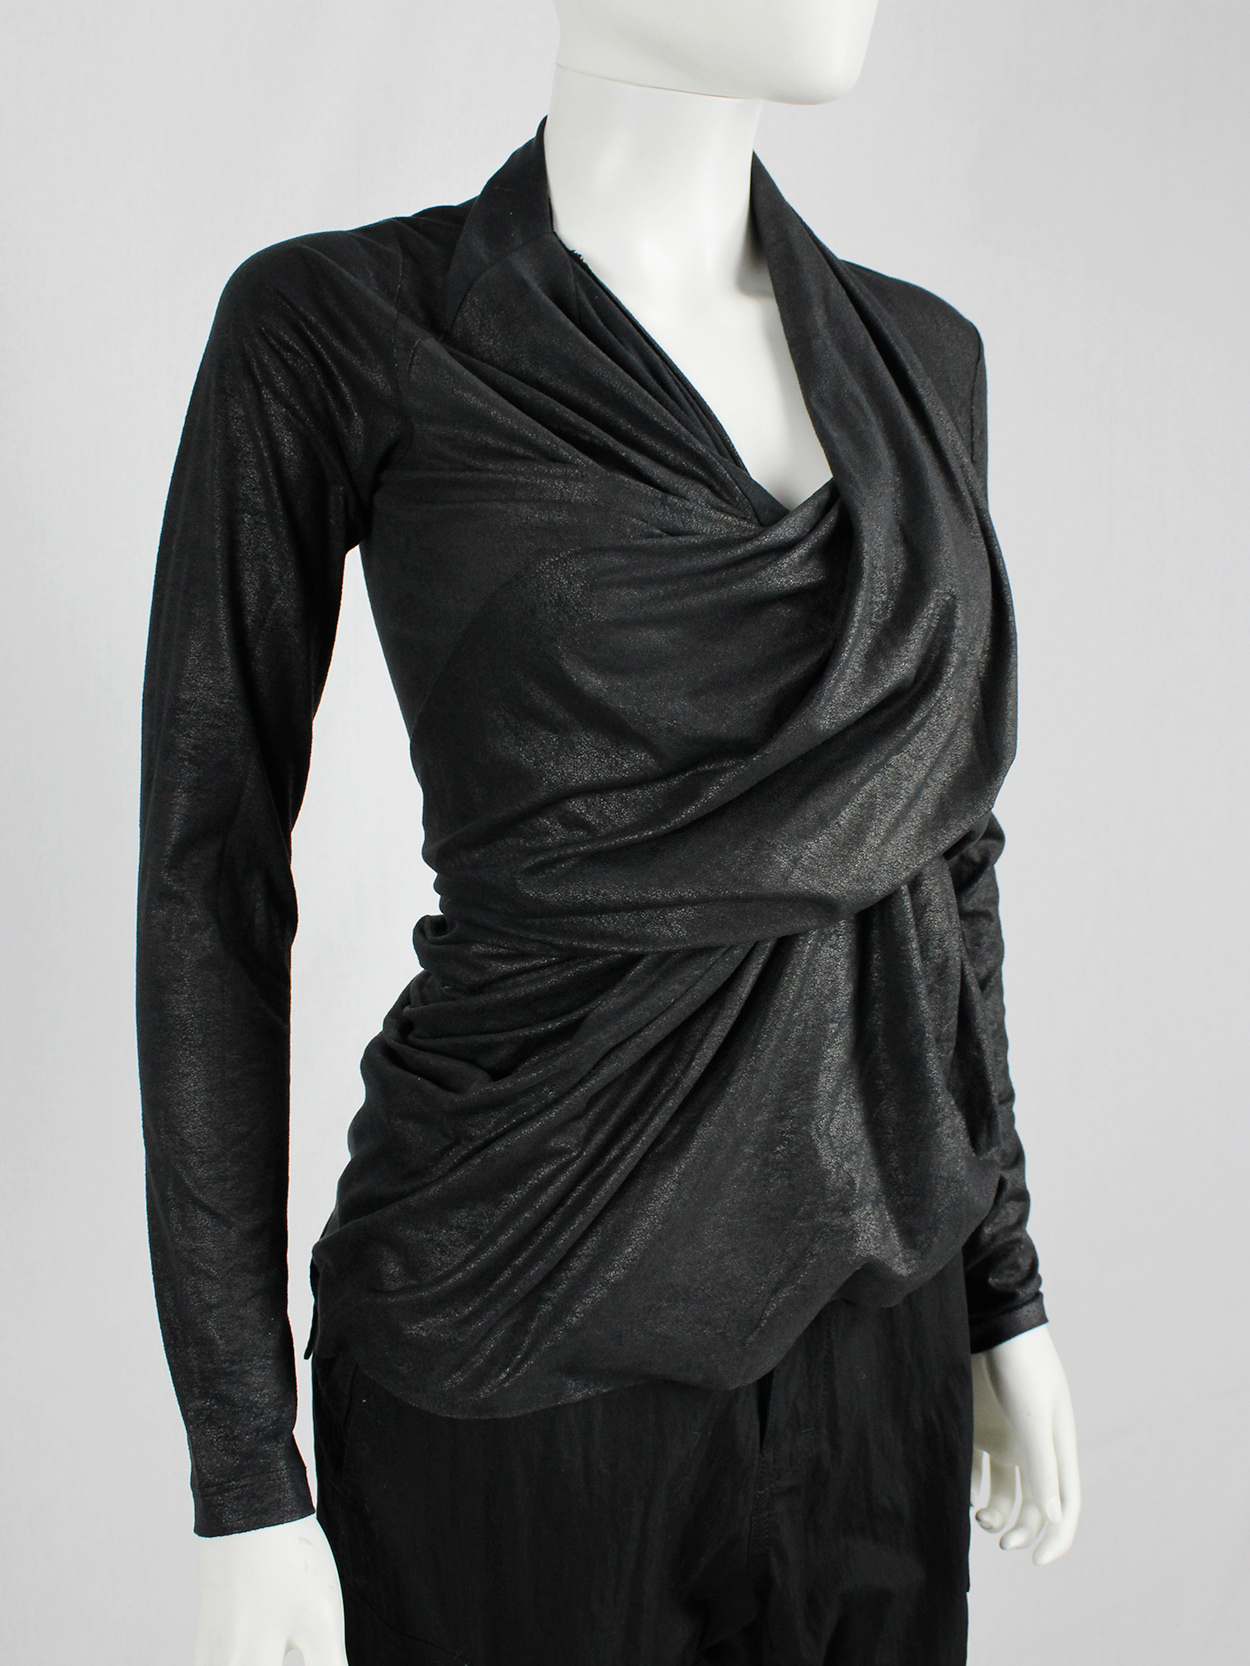 af Vandevorst black diagonal jumper with heavily gathered draping fall 2010 (12)